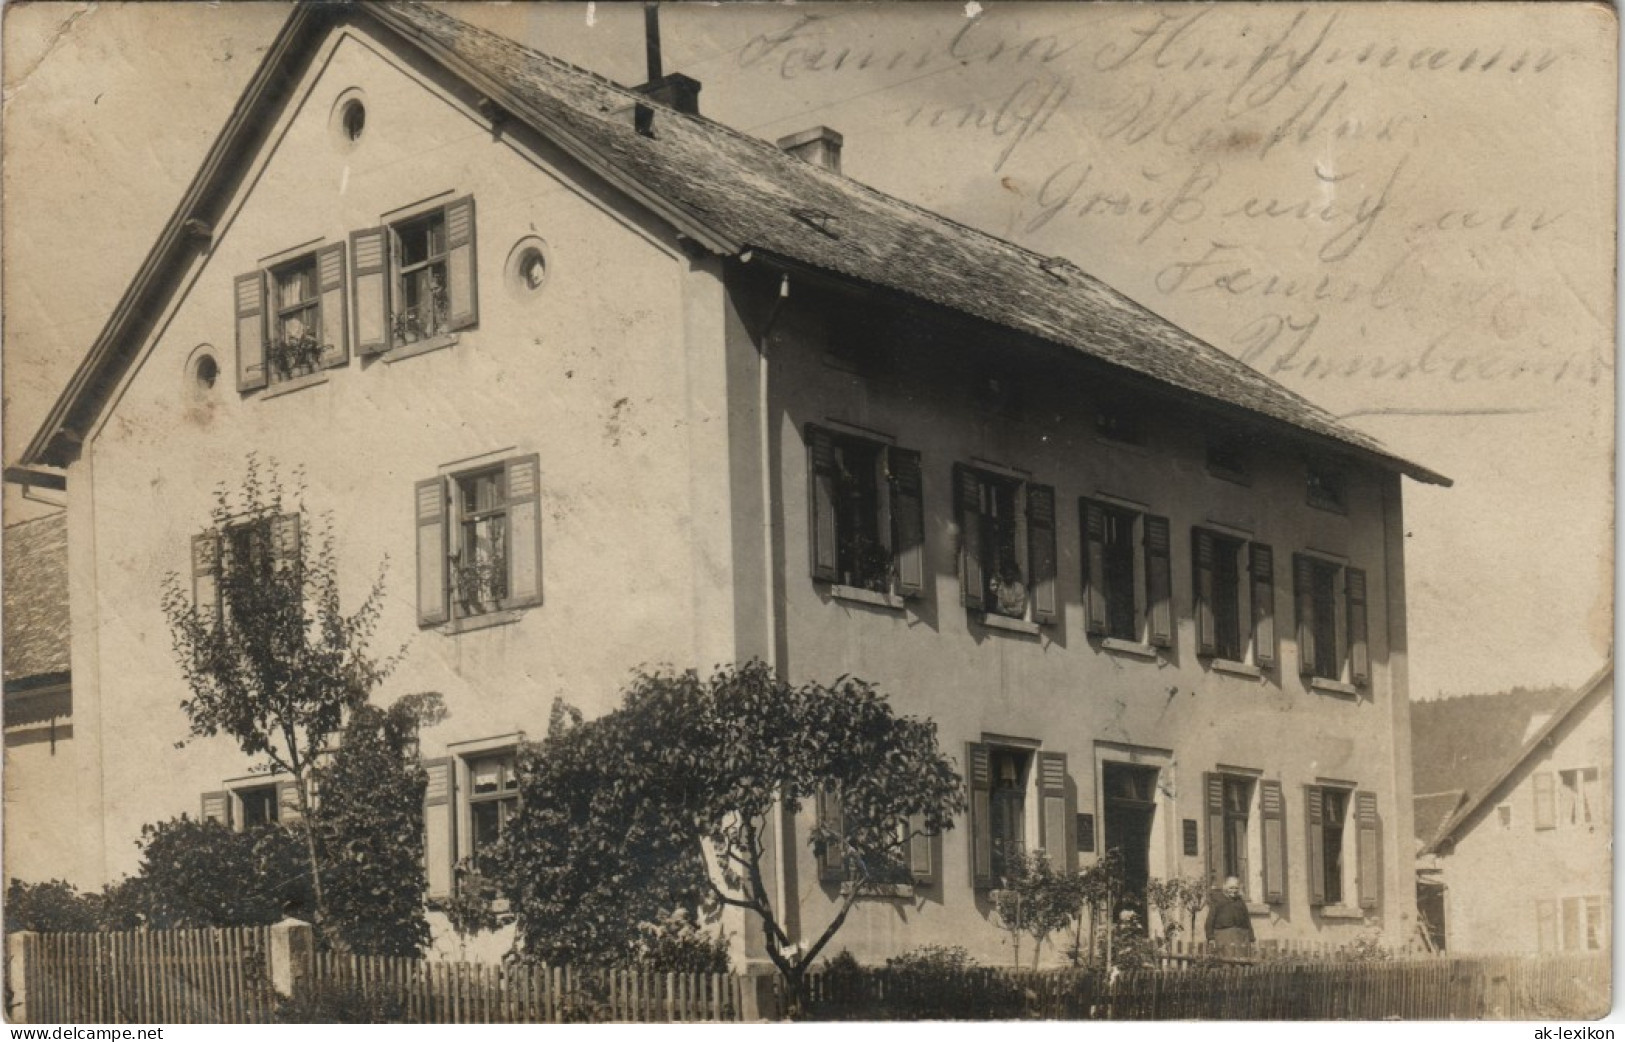 Foto  Mehrfamilienhaus Bayern 1913 Privatfoto - Zu Identifizieren